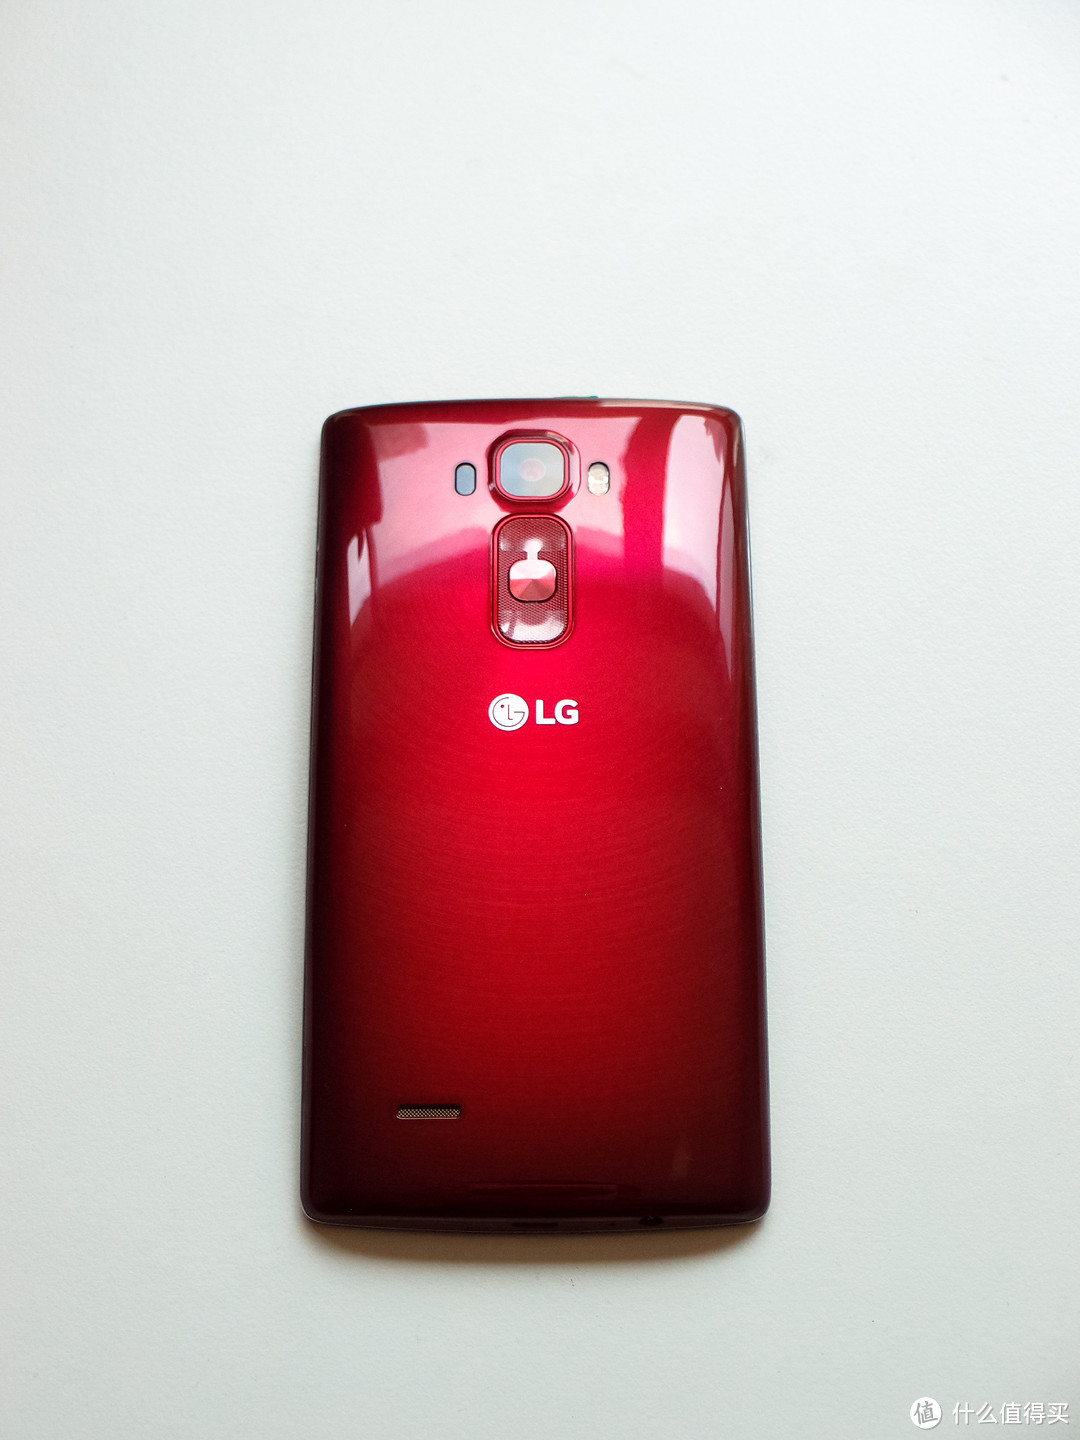 弯的Phone并不wonderful：LG G Flex2 体验